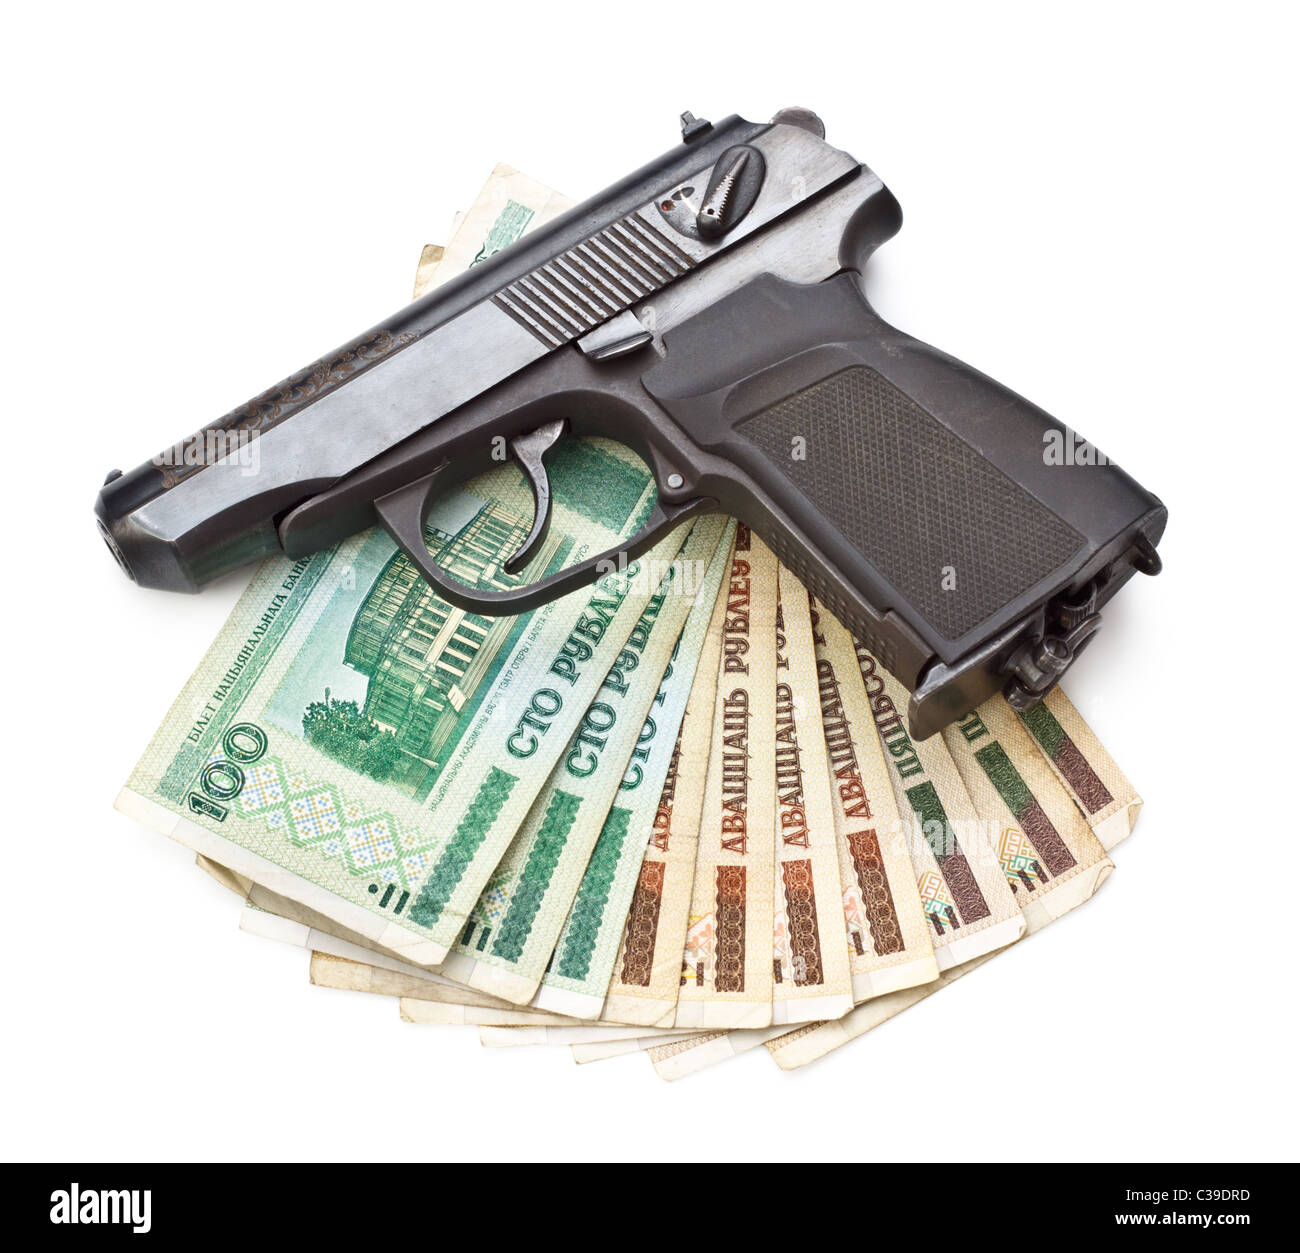 Pistola y dinero aislado sobre fondo blanco. Foto de stock